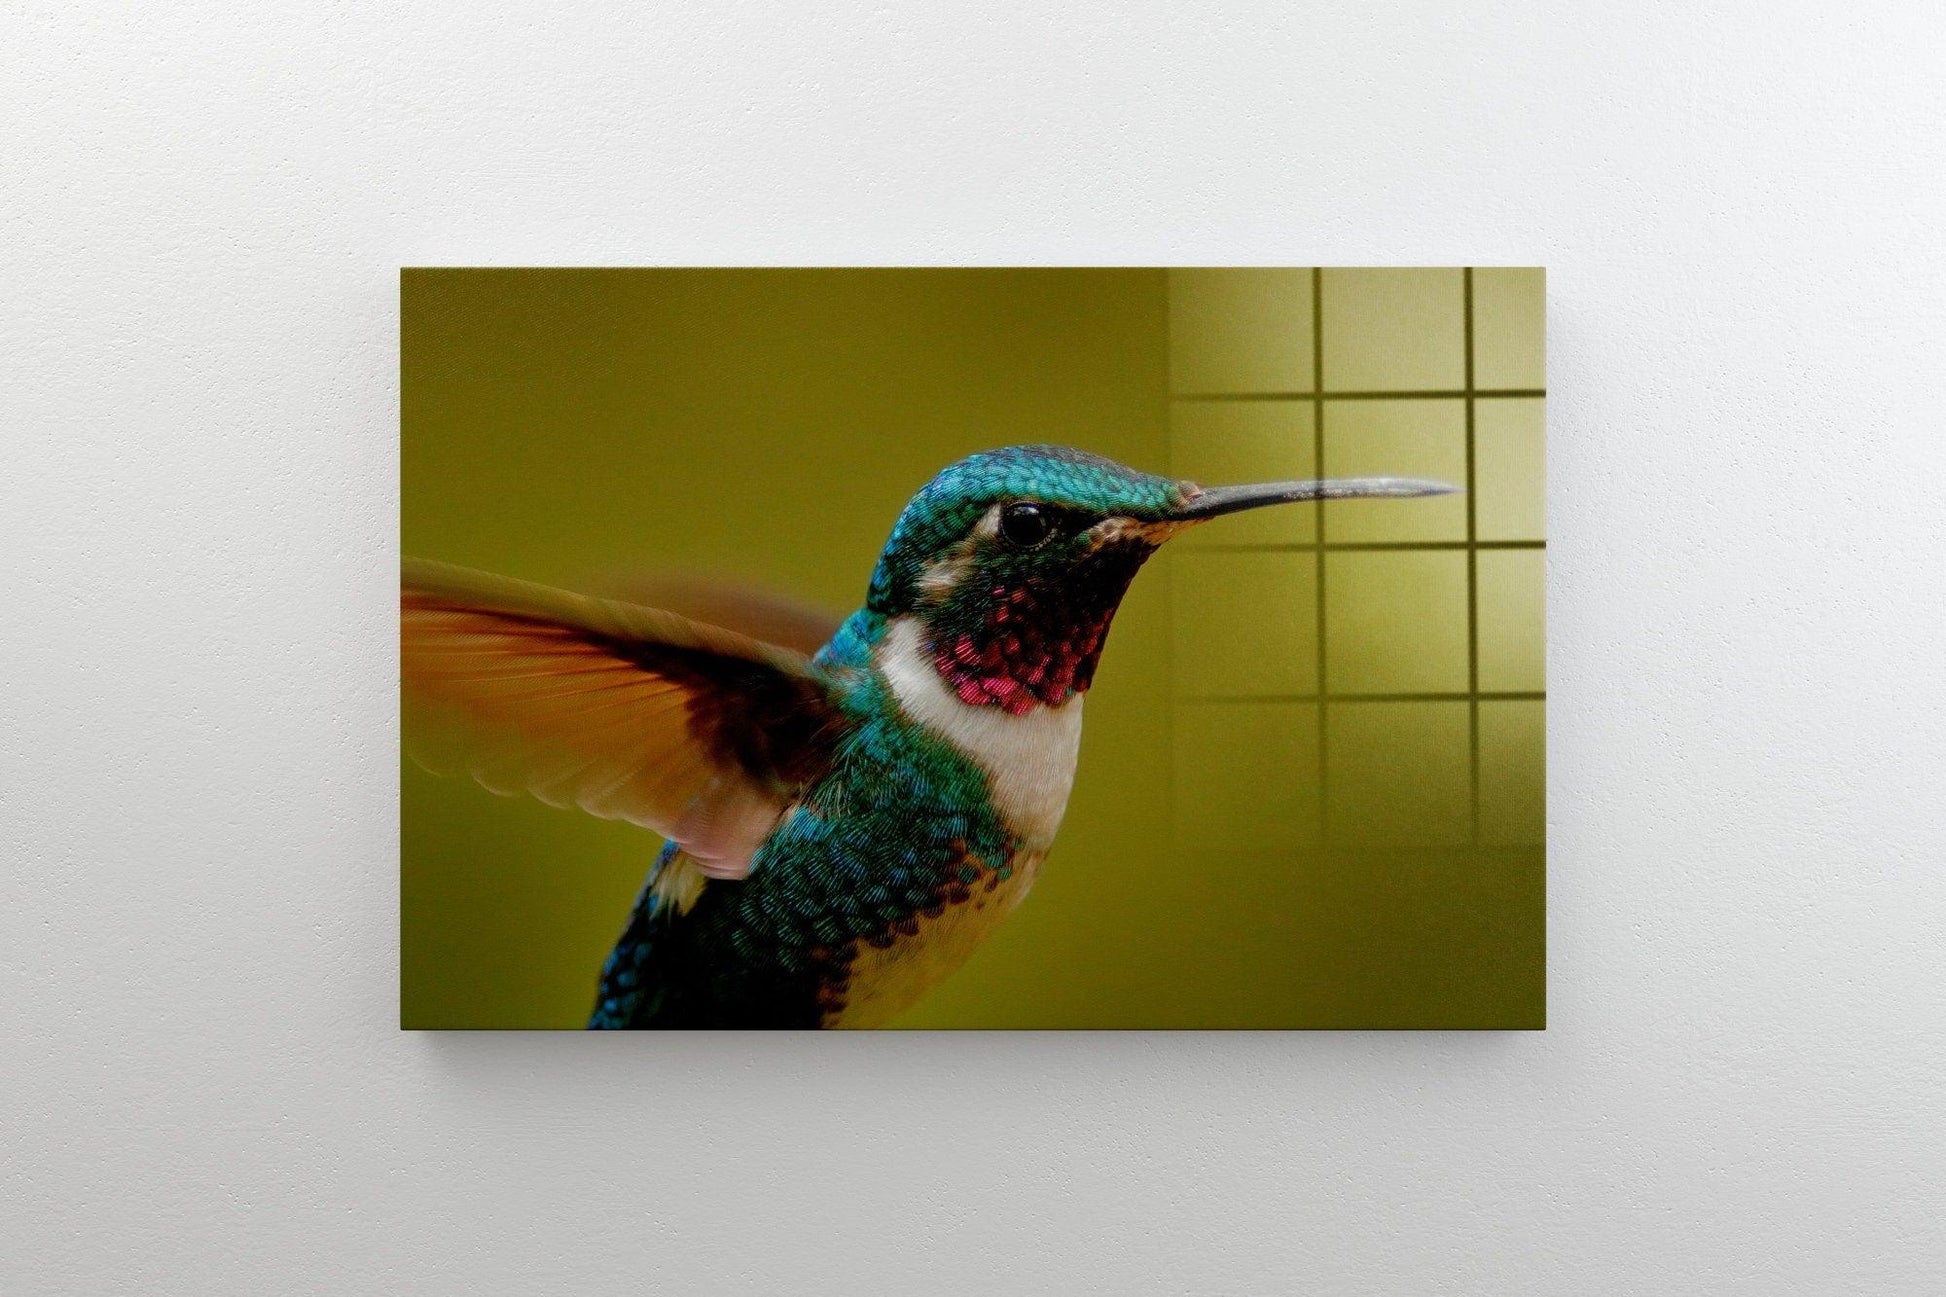 Hummingbird Flying Canvas wall Art Print | Hummingbird Tempered Glass or Canvas Printing Wall Art , Natural And Vivid Wall Decor